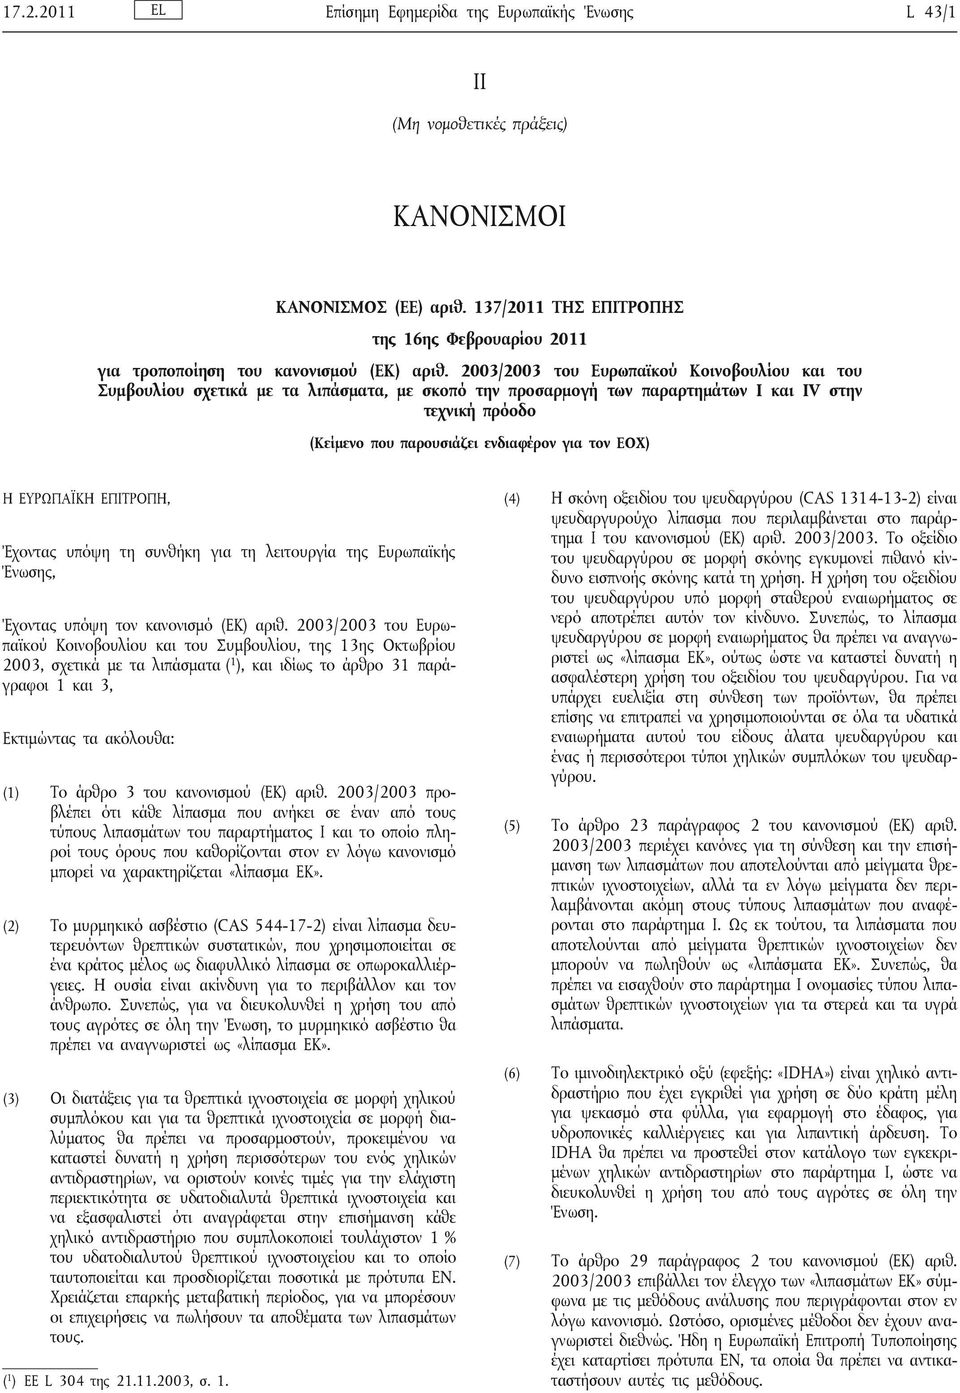 2003/2003 του Ευρωπαϊκού Κοινοβουλίου και του Συμβουλίου σχετικά με τα λιπάσματα, με σκοπό την προσαρμογή των παραρτημάτων I και IV στην τεχνική πρόοδο (Κείμενο που παρουσιάζει ενδιαφέρον για τον